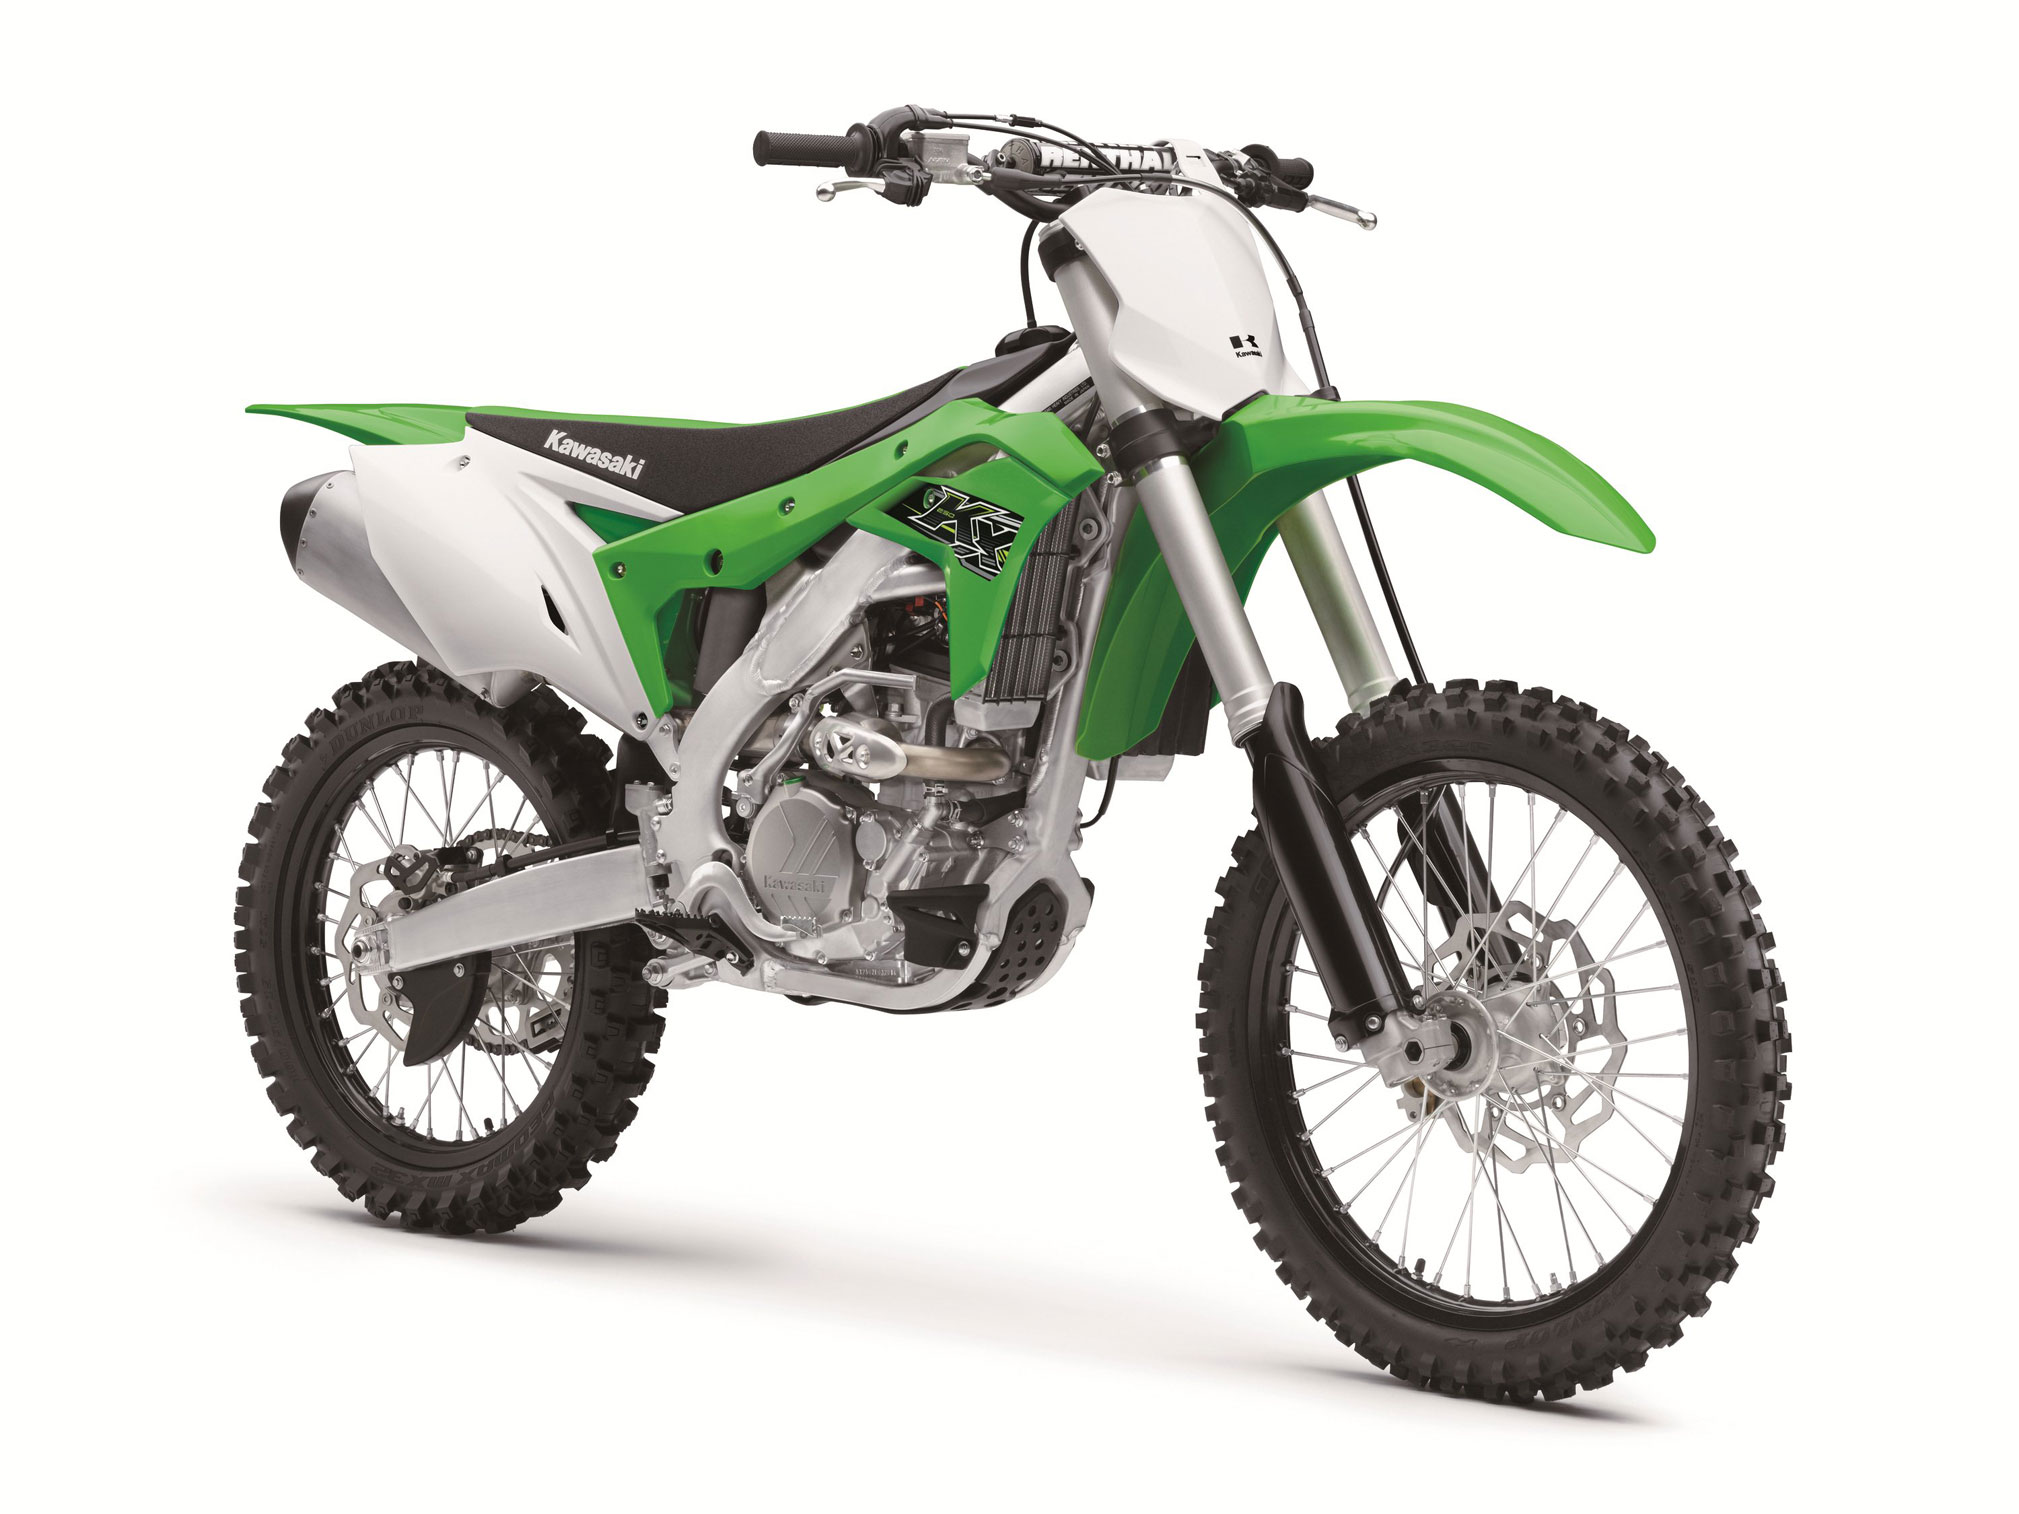 2020 Kawasaki KX250 First Review - Cycle News